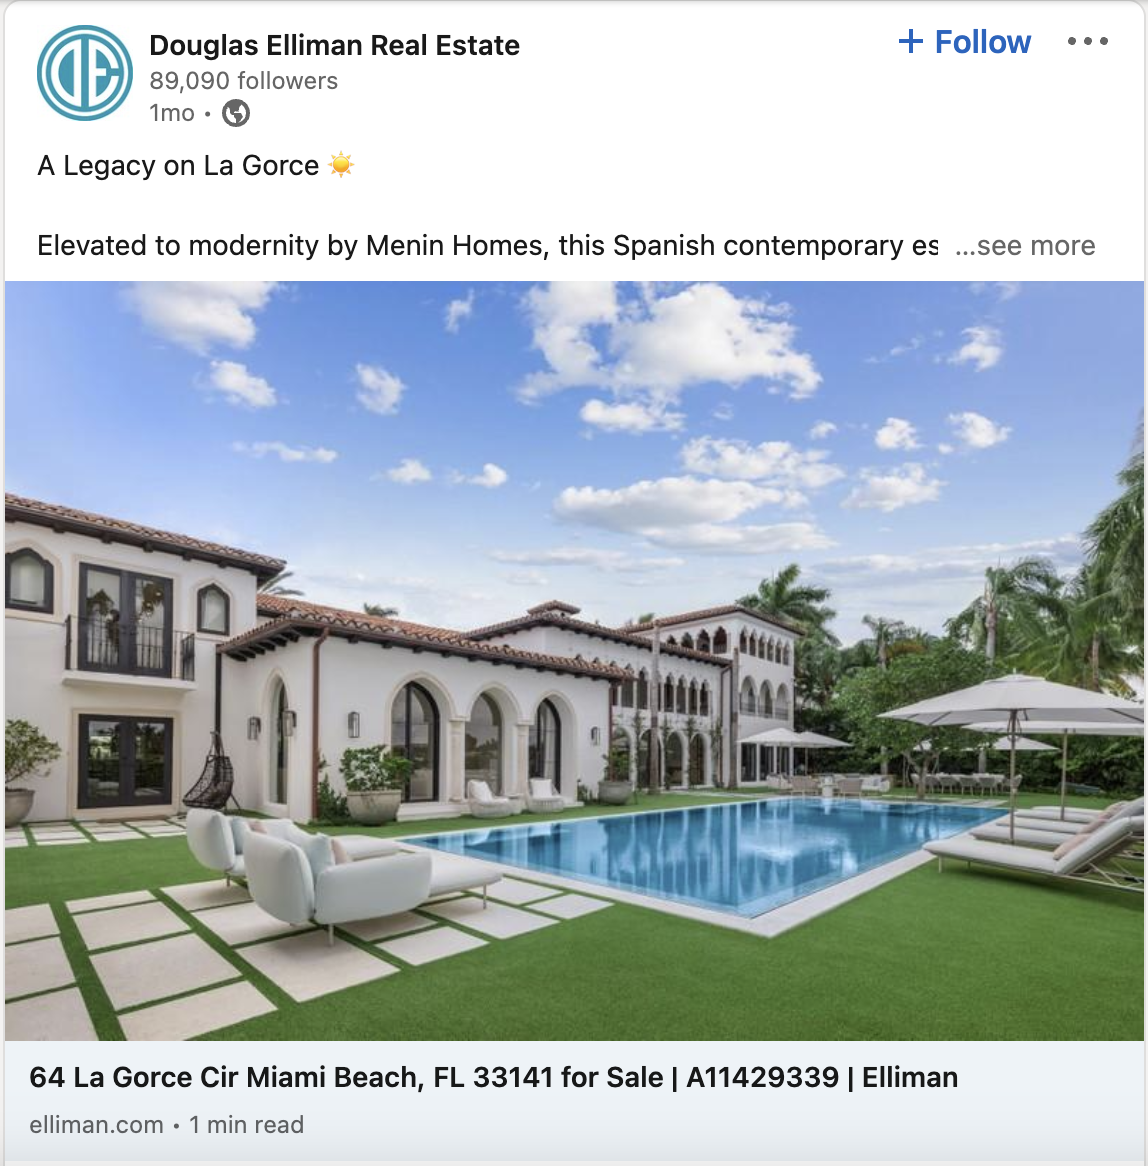 Douglas-Elliman-real-estate-linkedIn